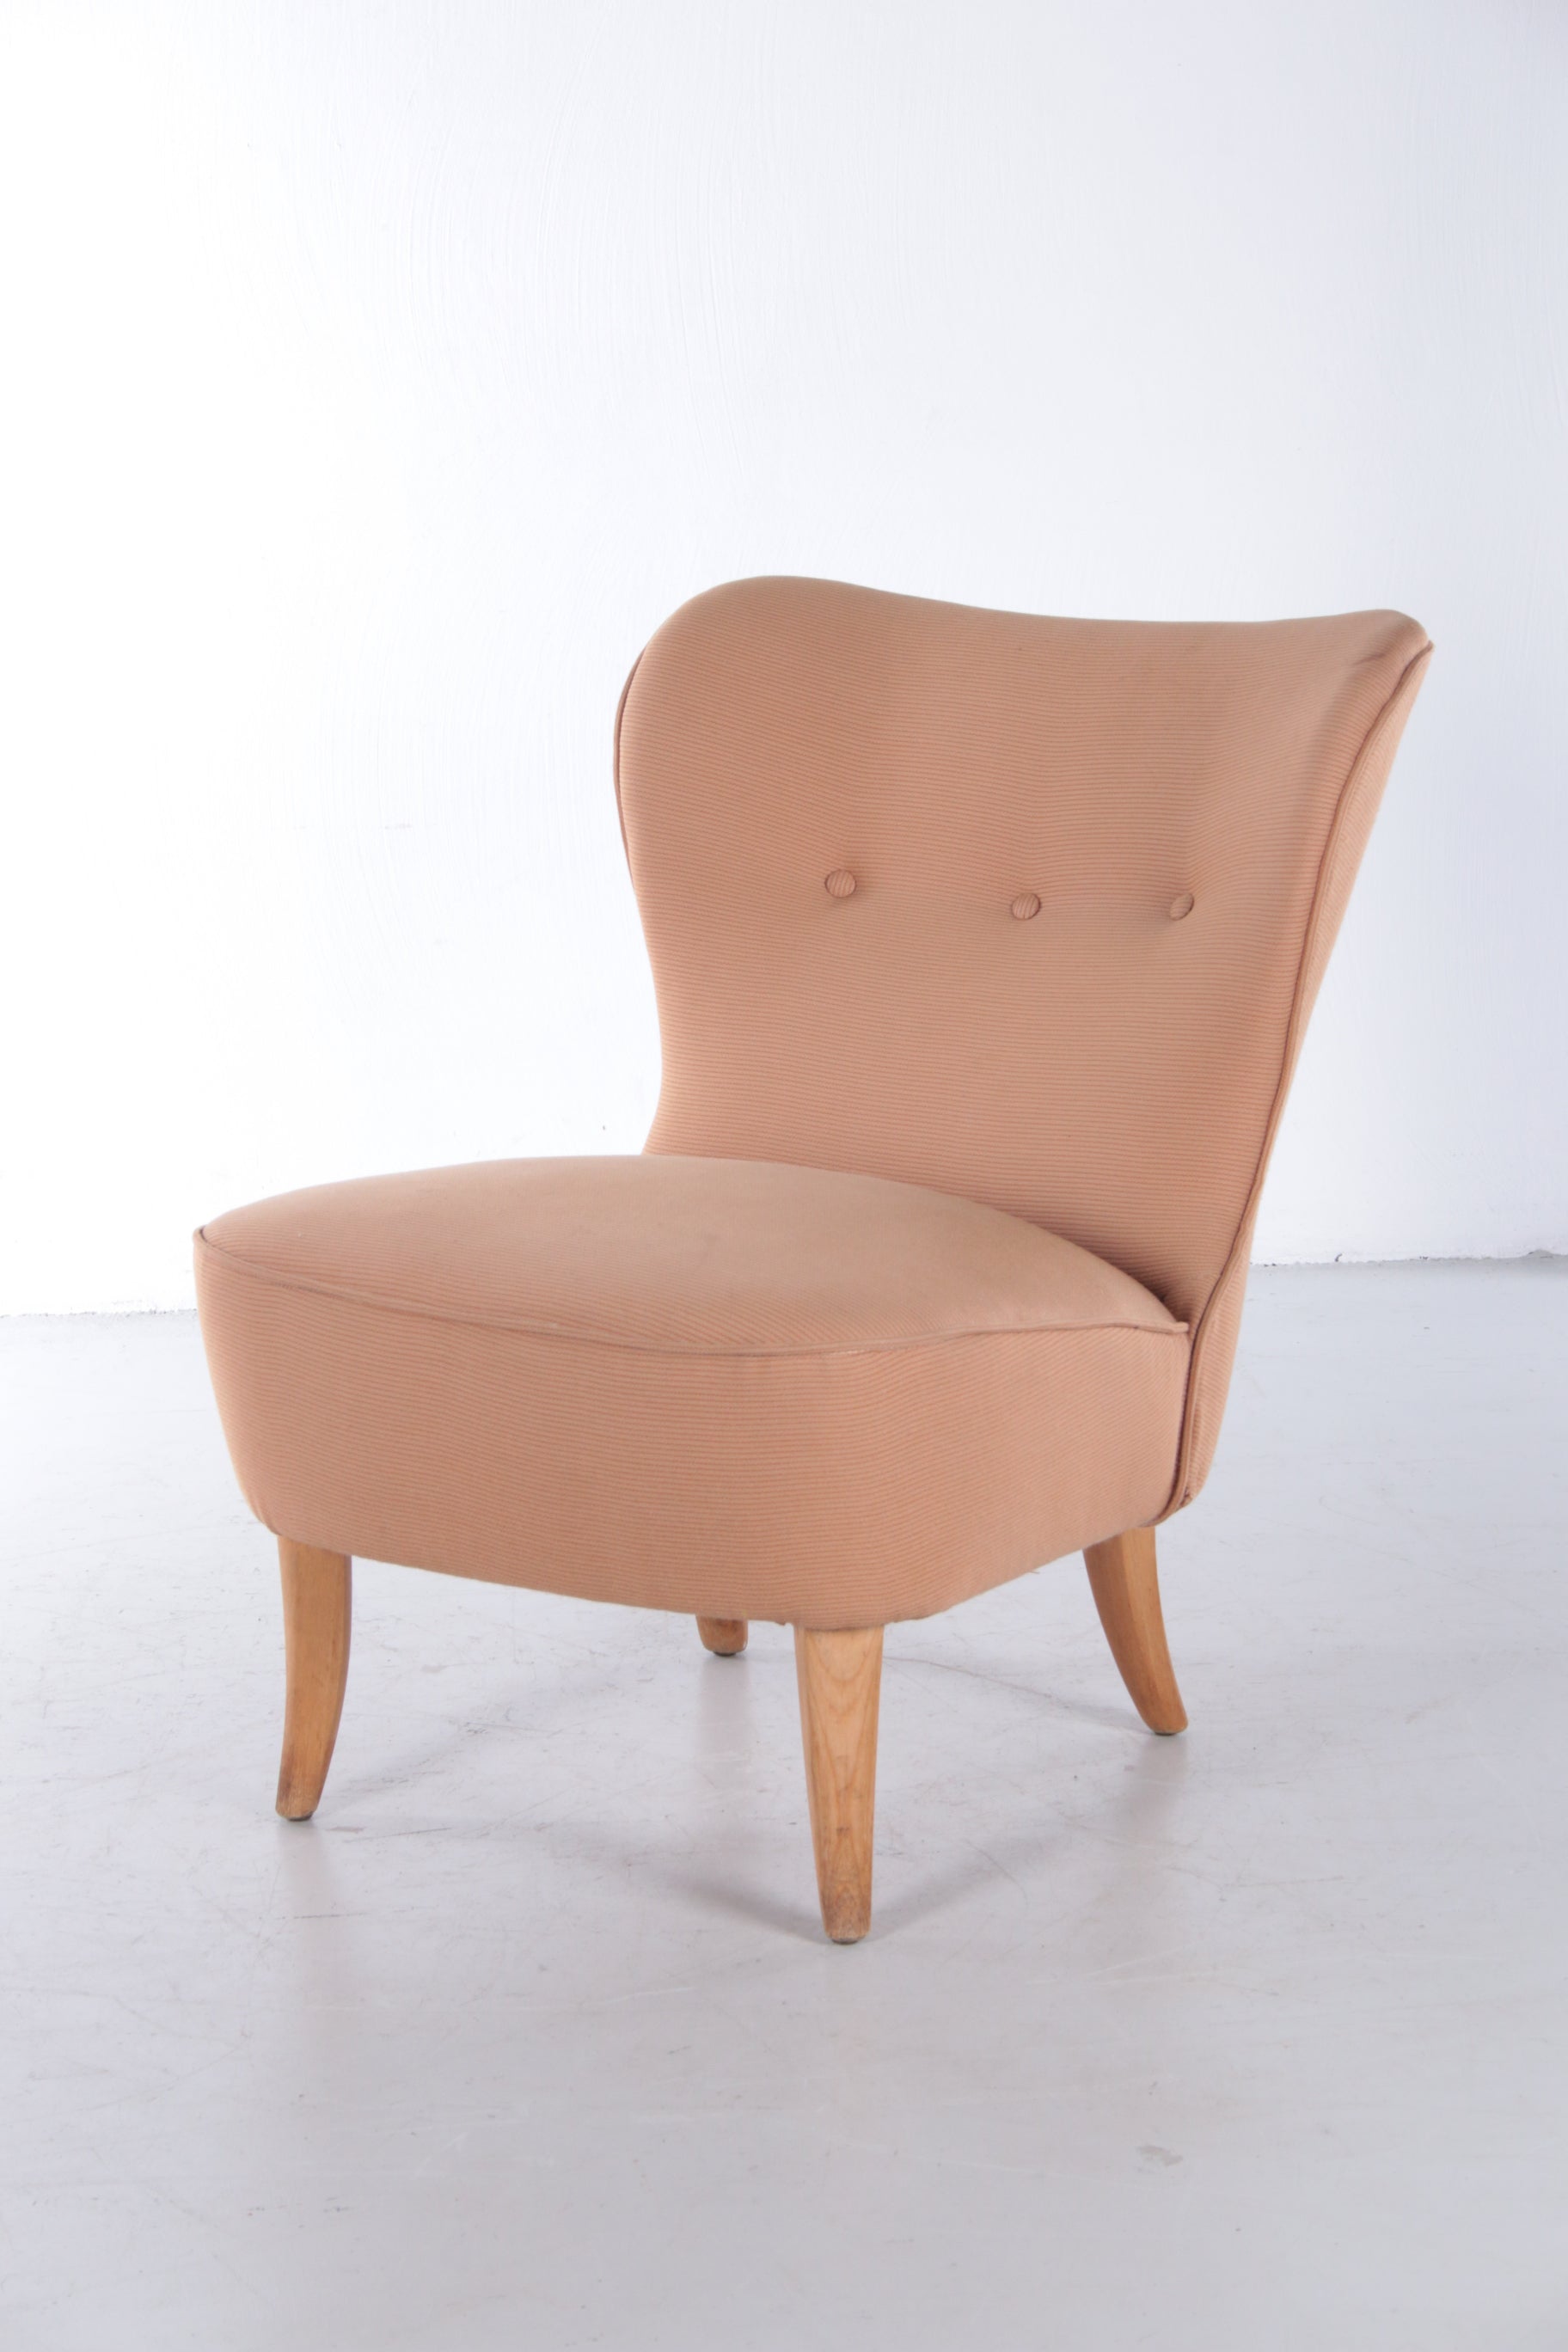 Vintage Artifort Theo Ruth stoel / fauteuil,1950 voorkant schuin